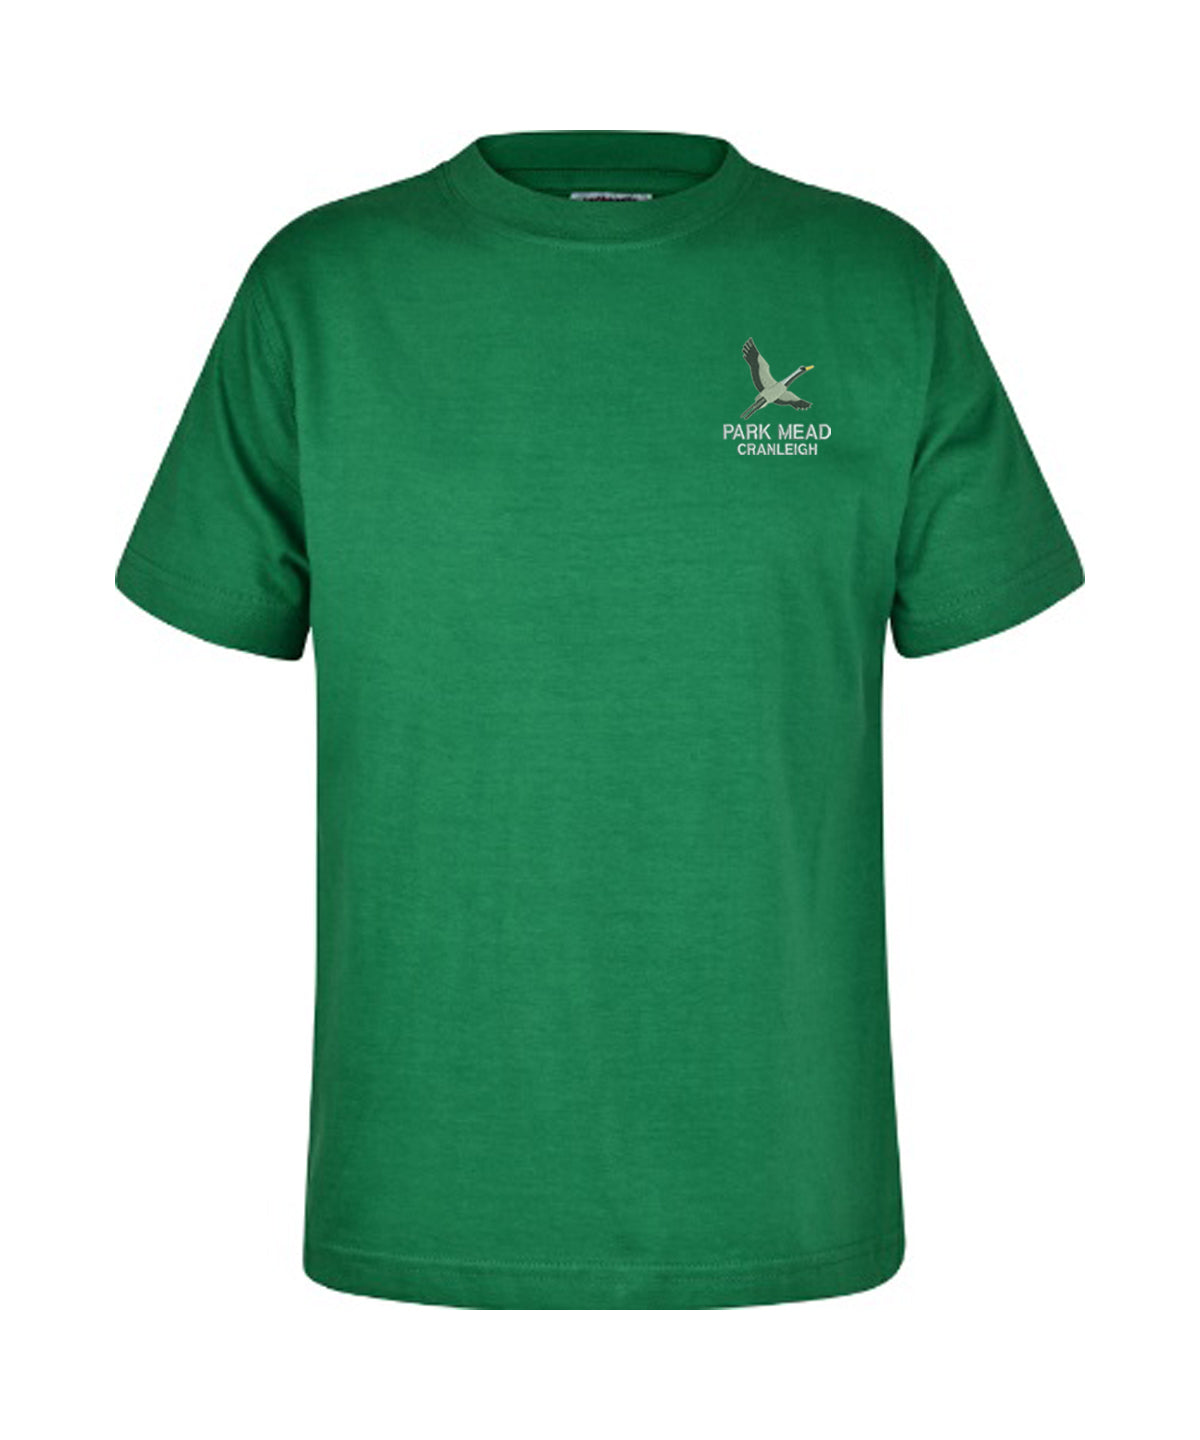 Park Mead Primary School - Unisex Cotton T Shirt - Emerald - School Uniform Shop